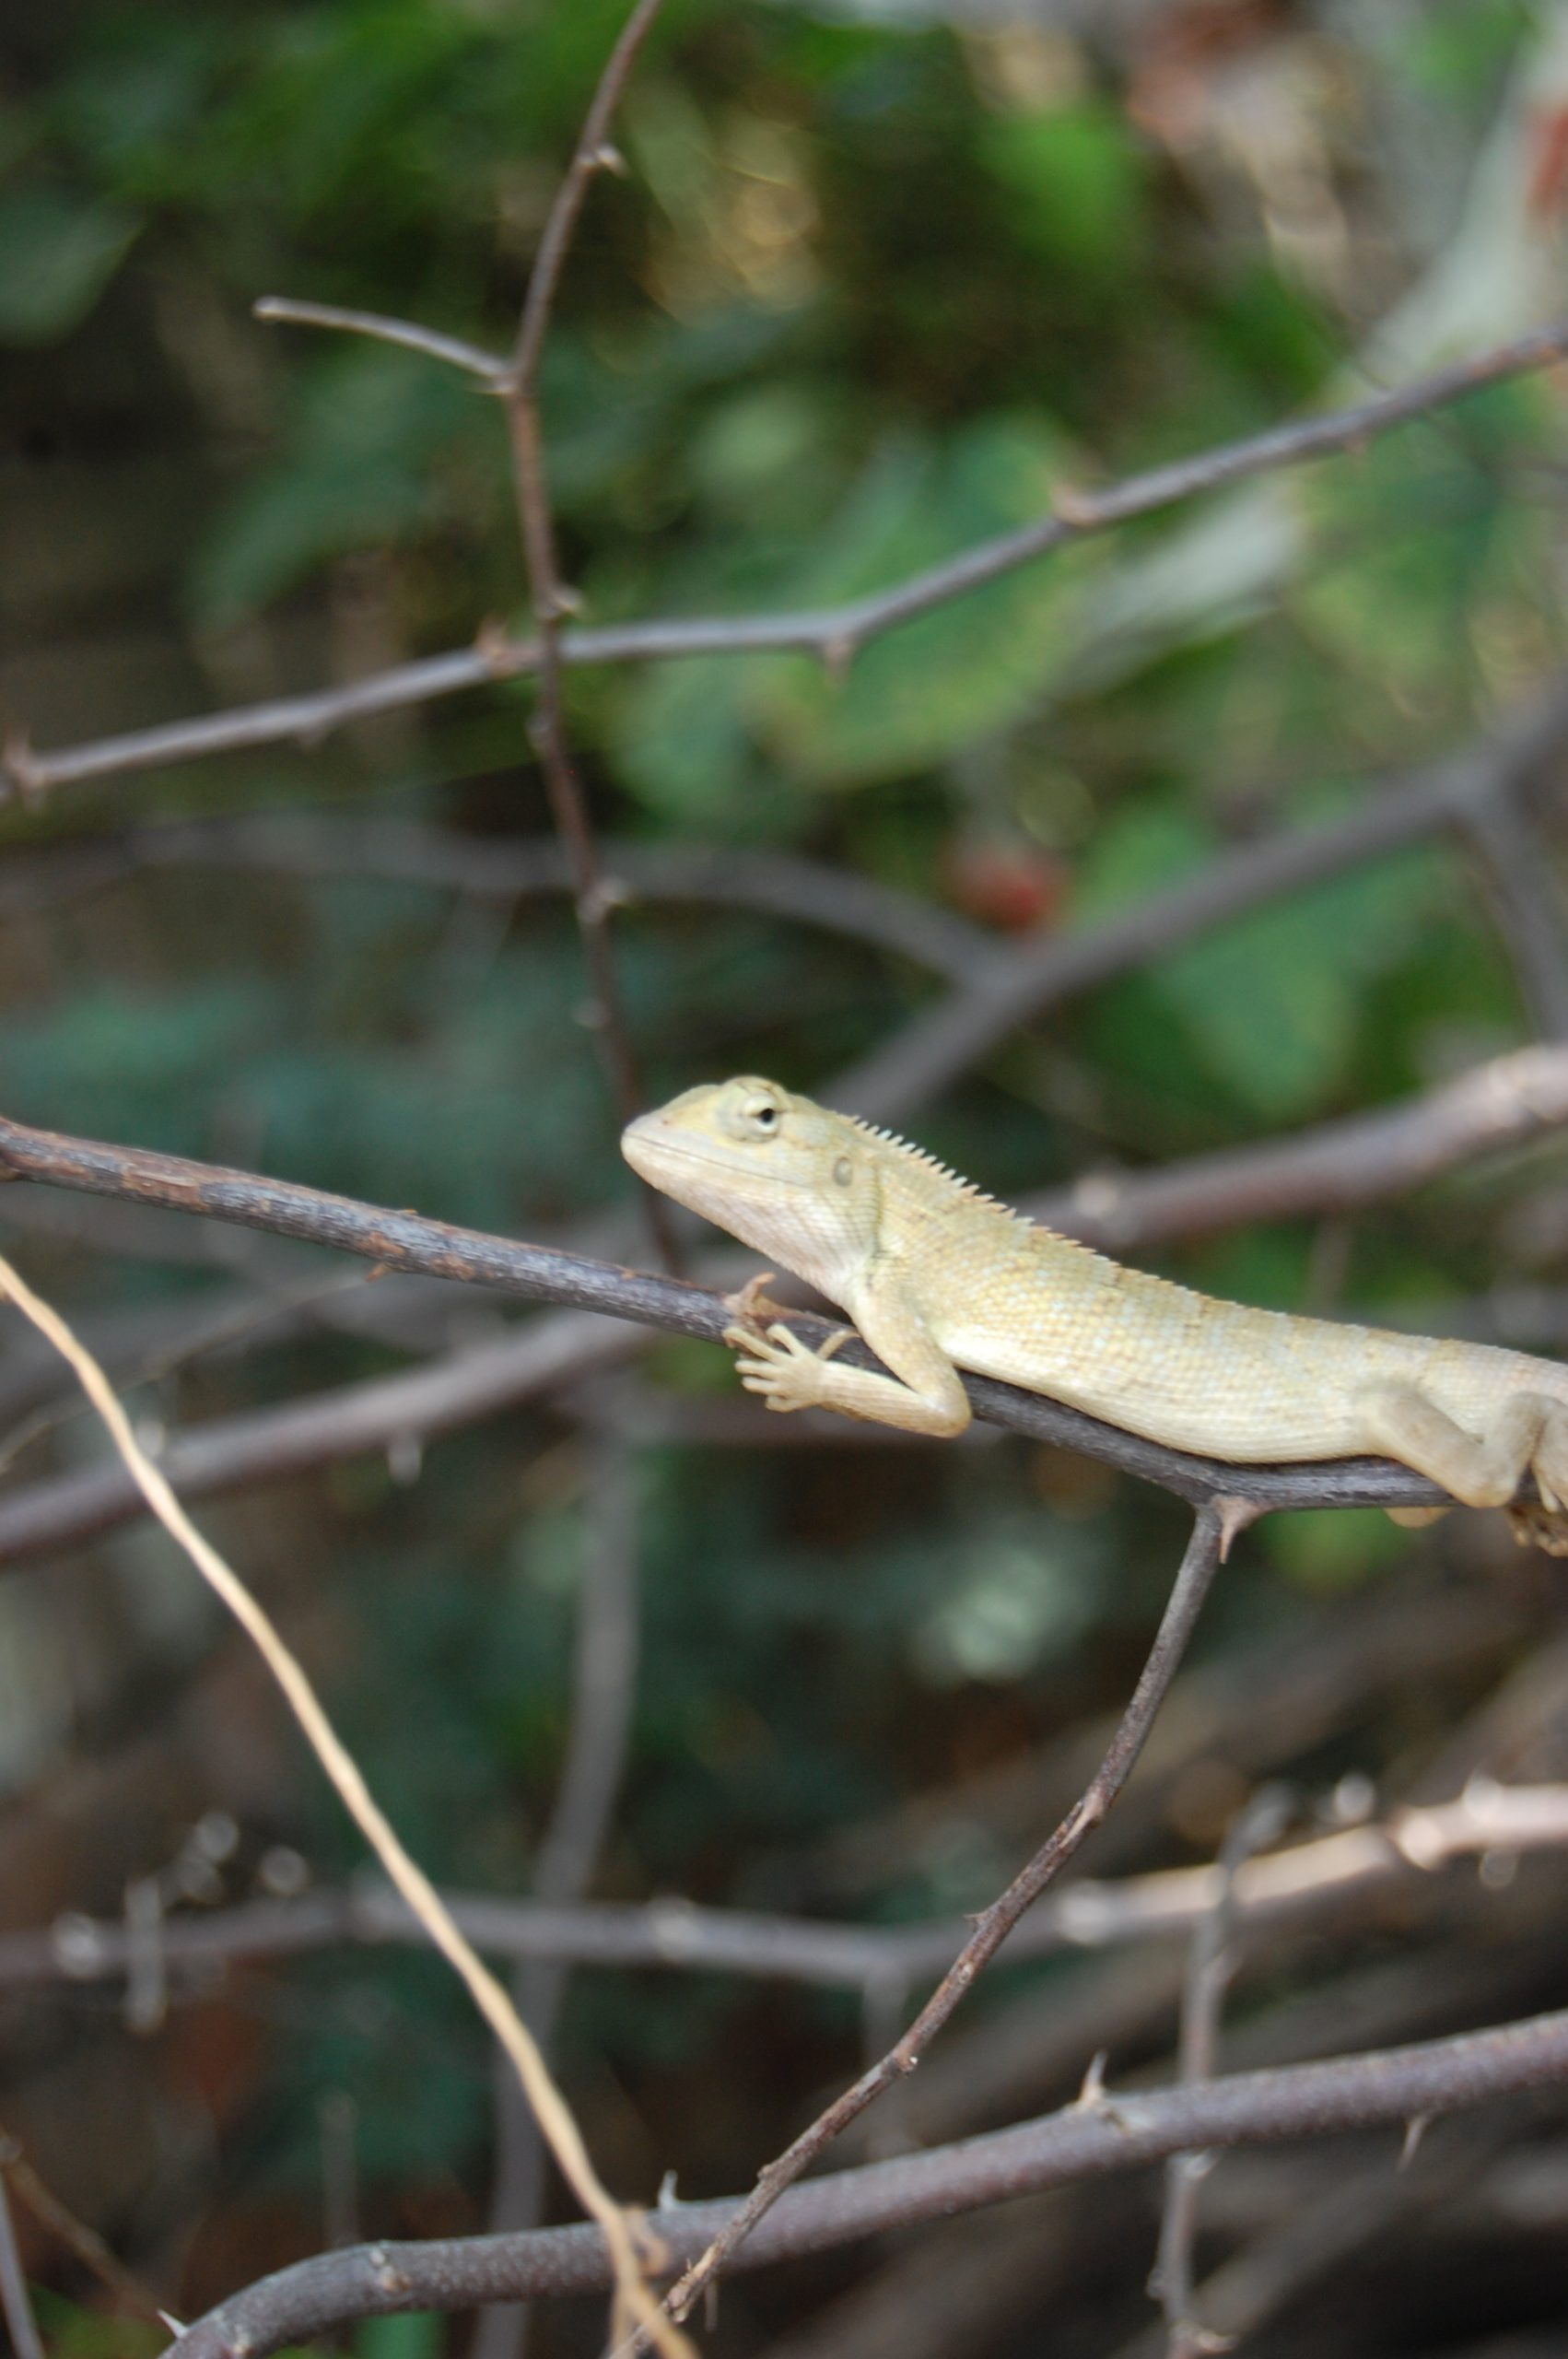 A lizard on a branch